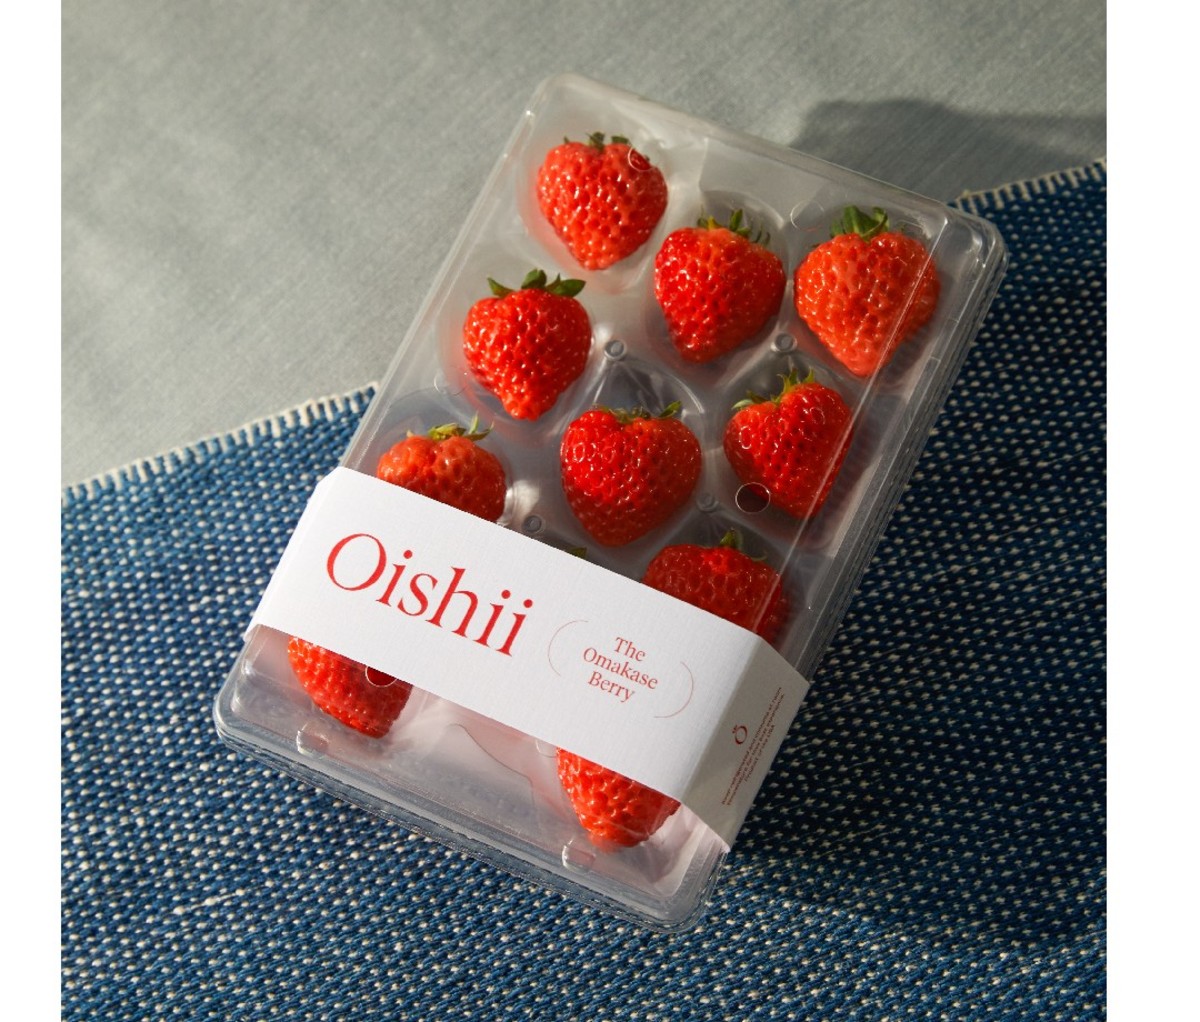 Package of Oishii Omakase Berries